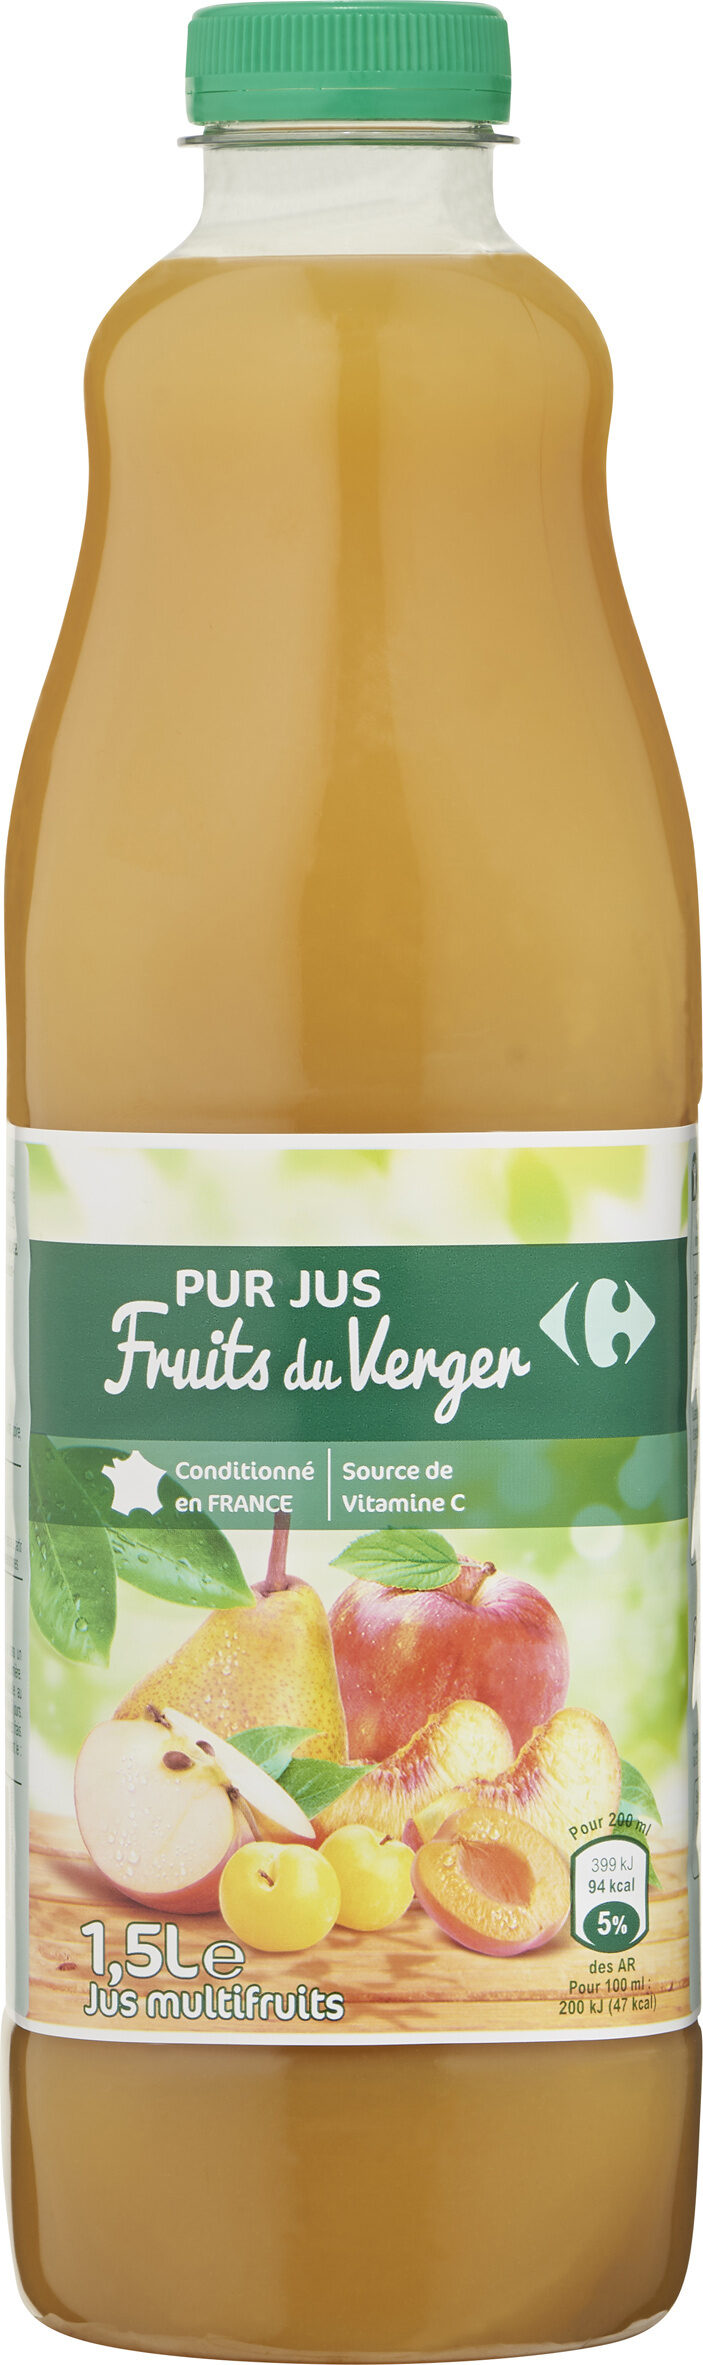 100% pur jus jus de fruits du verger - Producte - fr